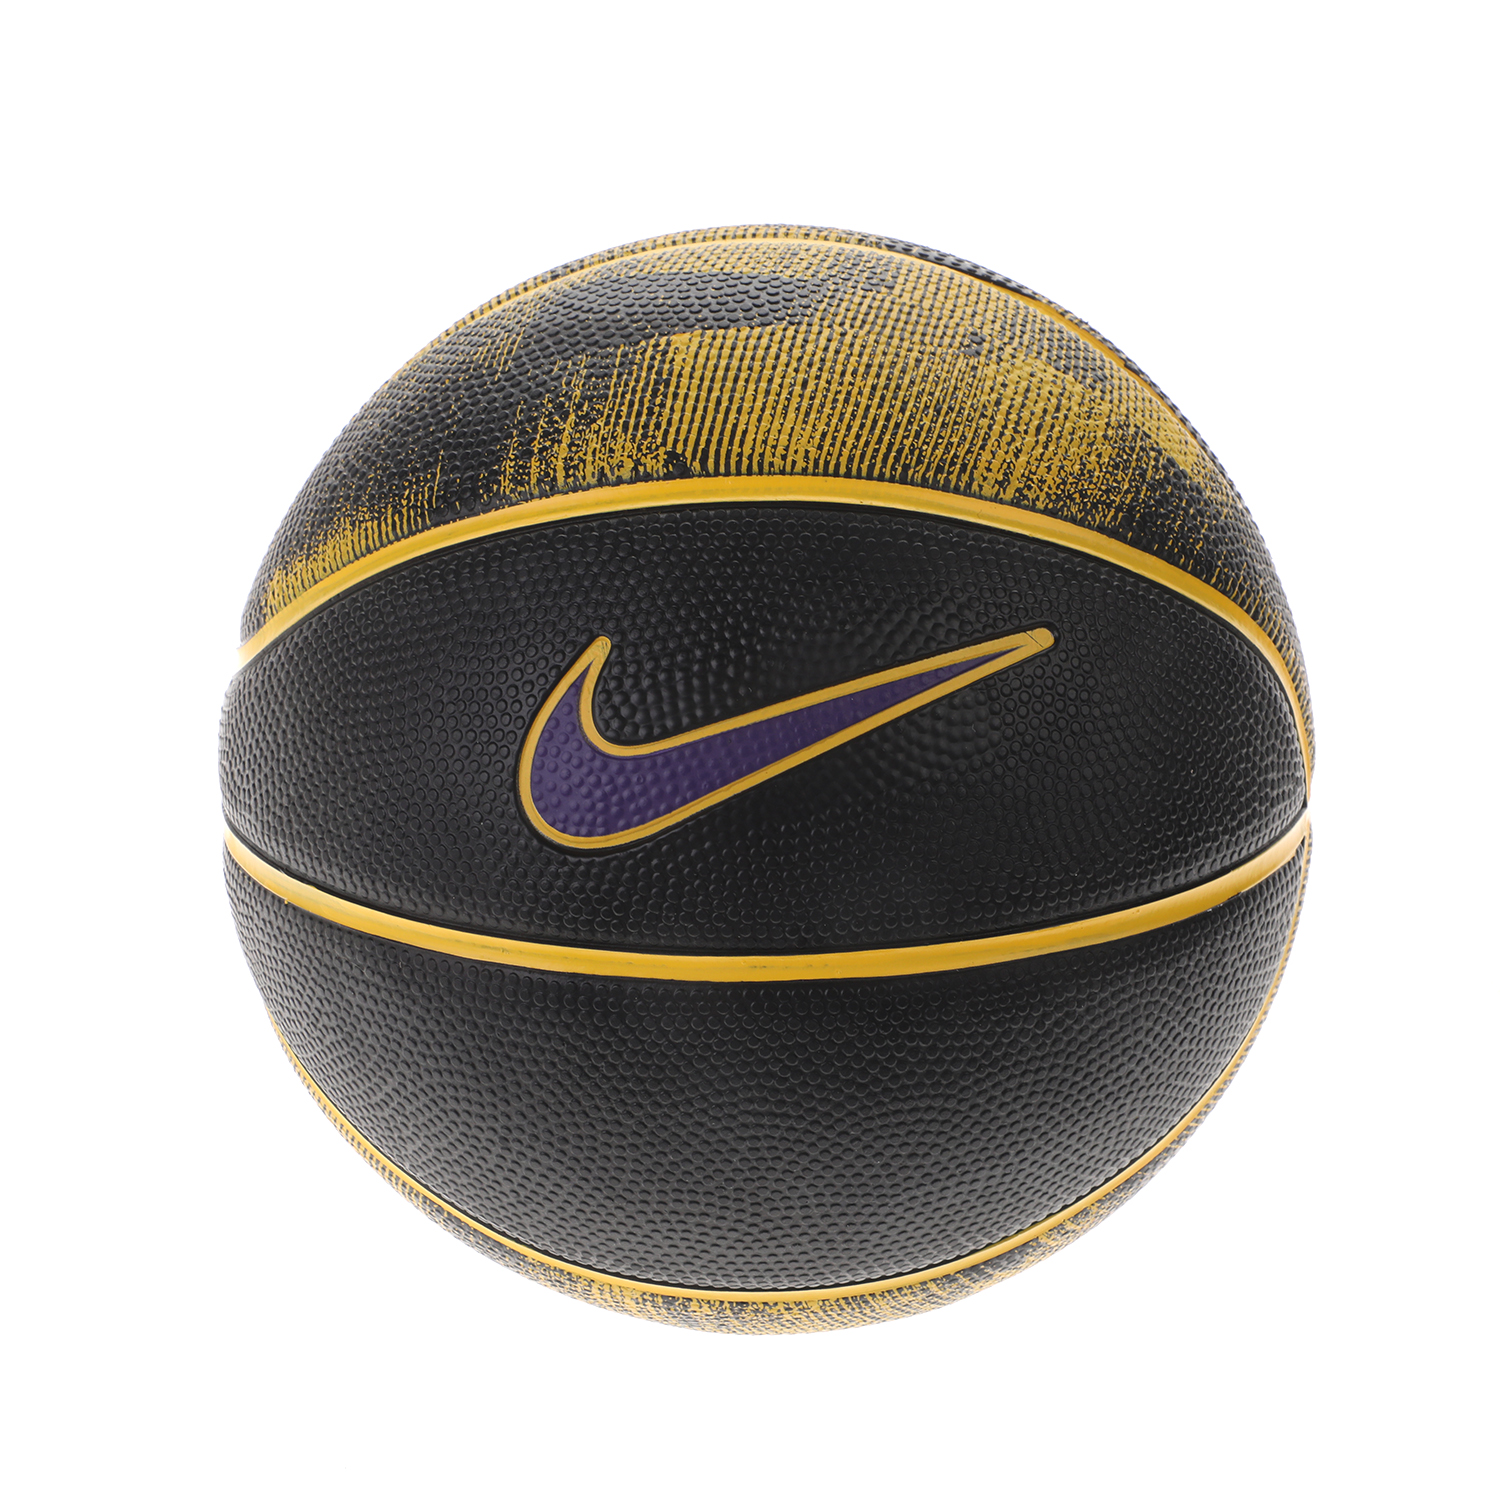 Γυναικεία/Αξεσουάρ/Αθλητικά Είδη/Μπάλες NIKE - Μπάλα για μπάσκετ n3 NIKE LEBRON SKILLS N.000.3144.03 μαύρη κίτρινη